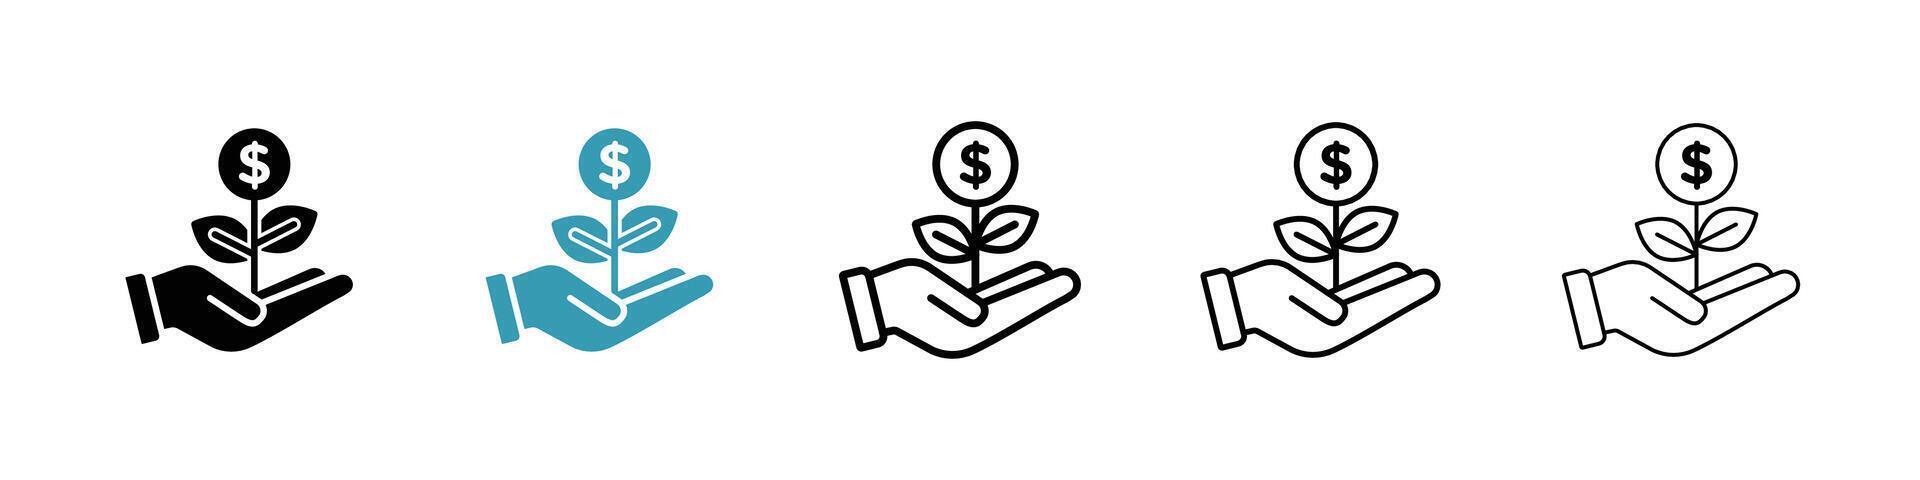 Money tree icon vector